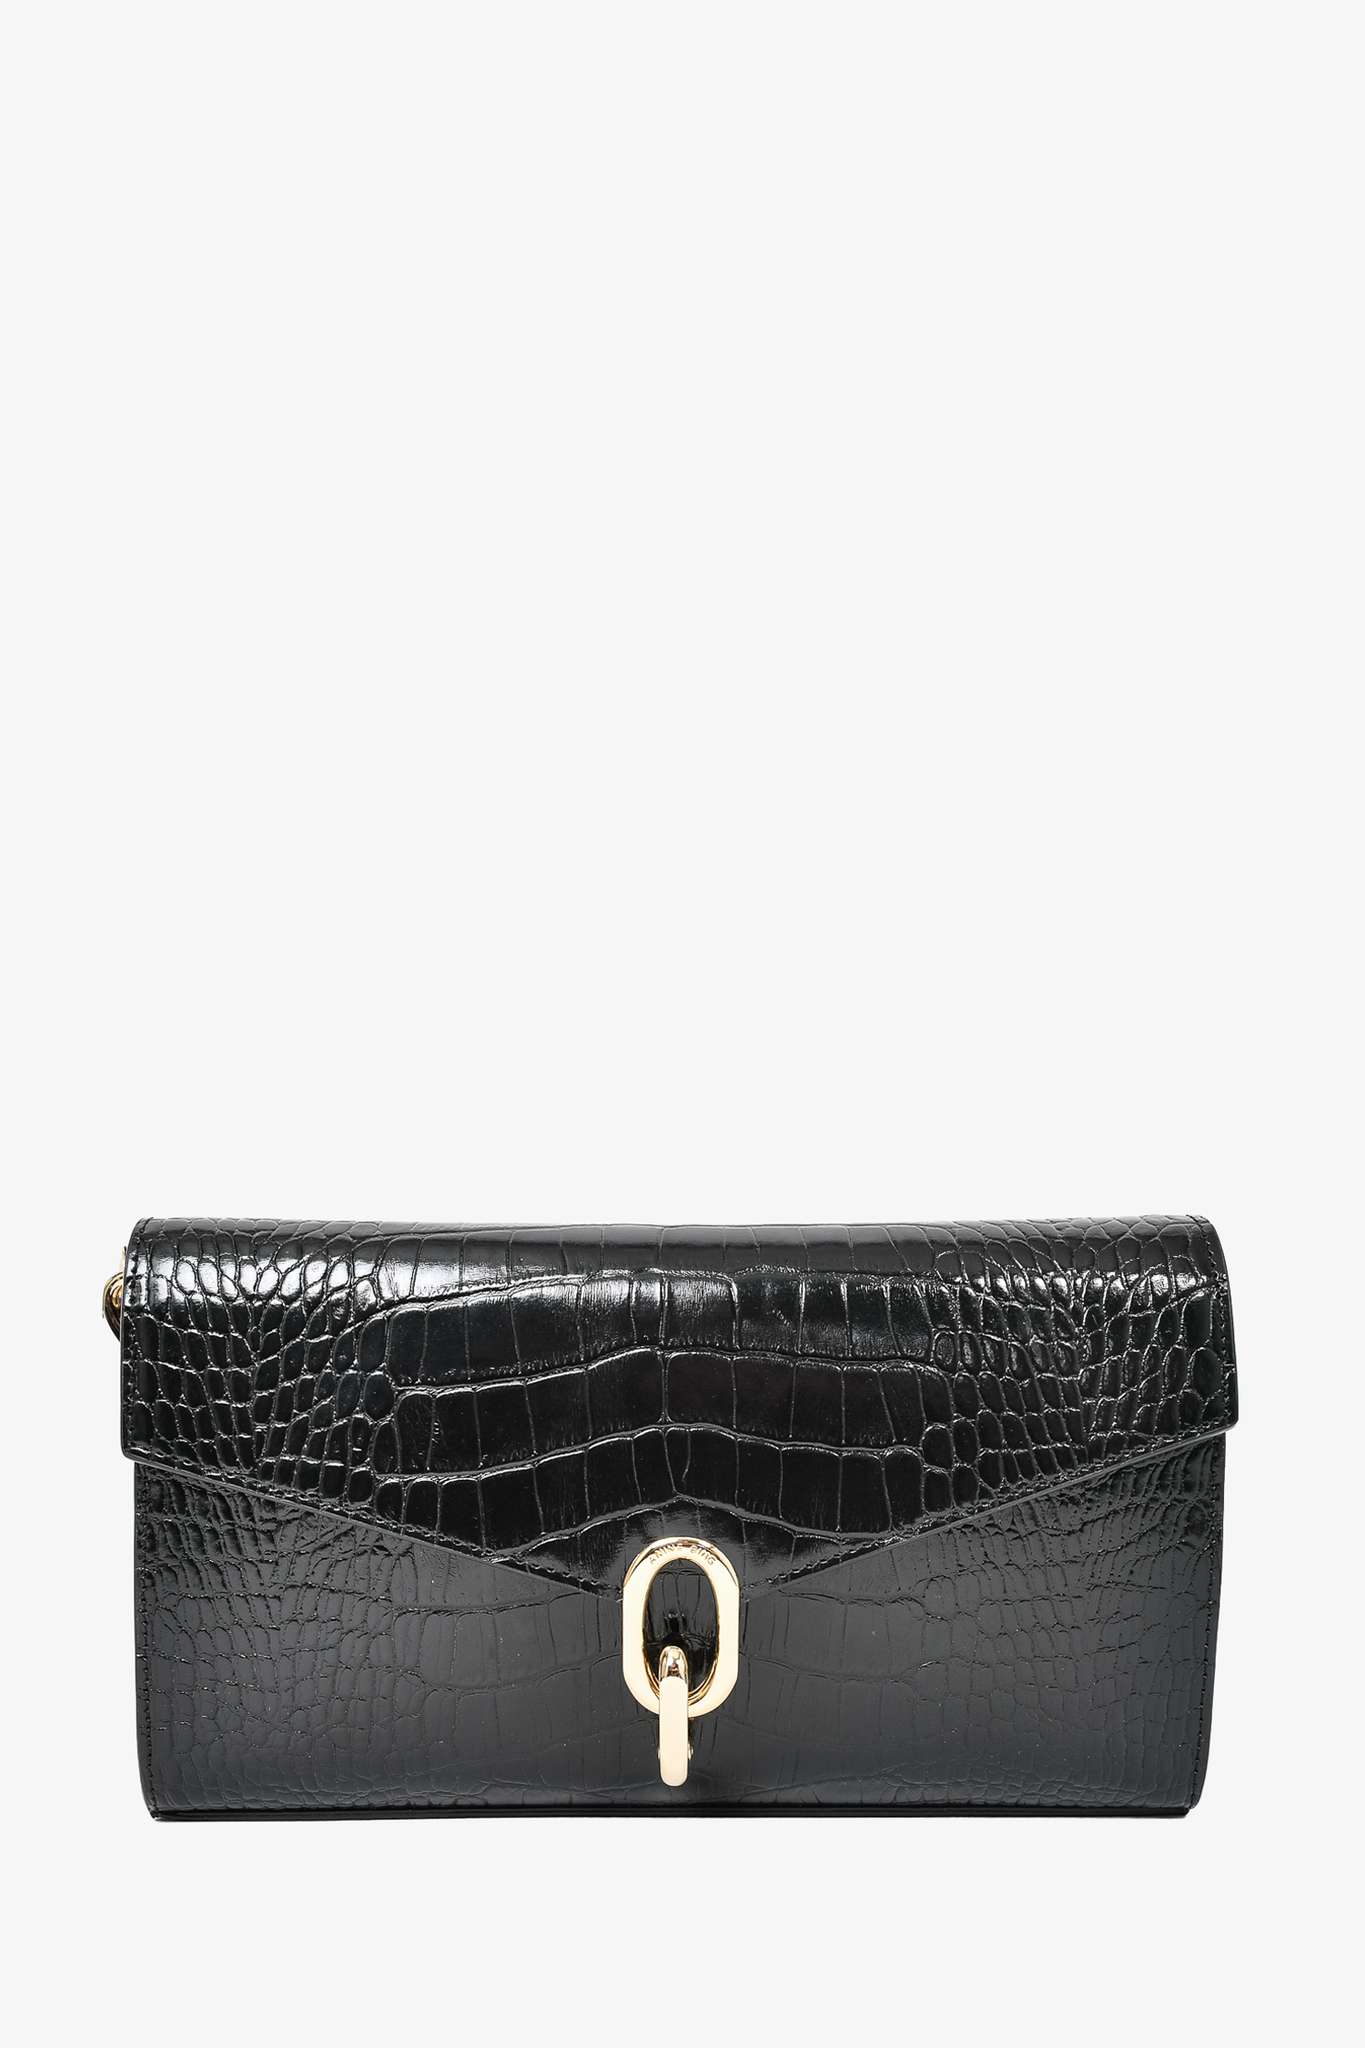 Anine Bing Black Croc Embossed Leather Colette Shoulder Bag w/ Strap